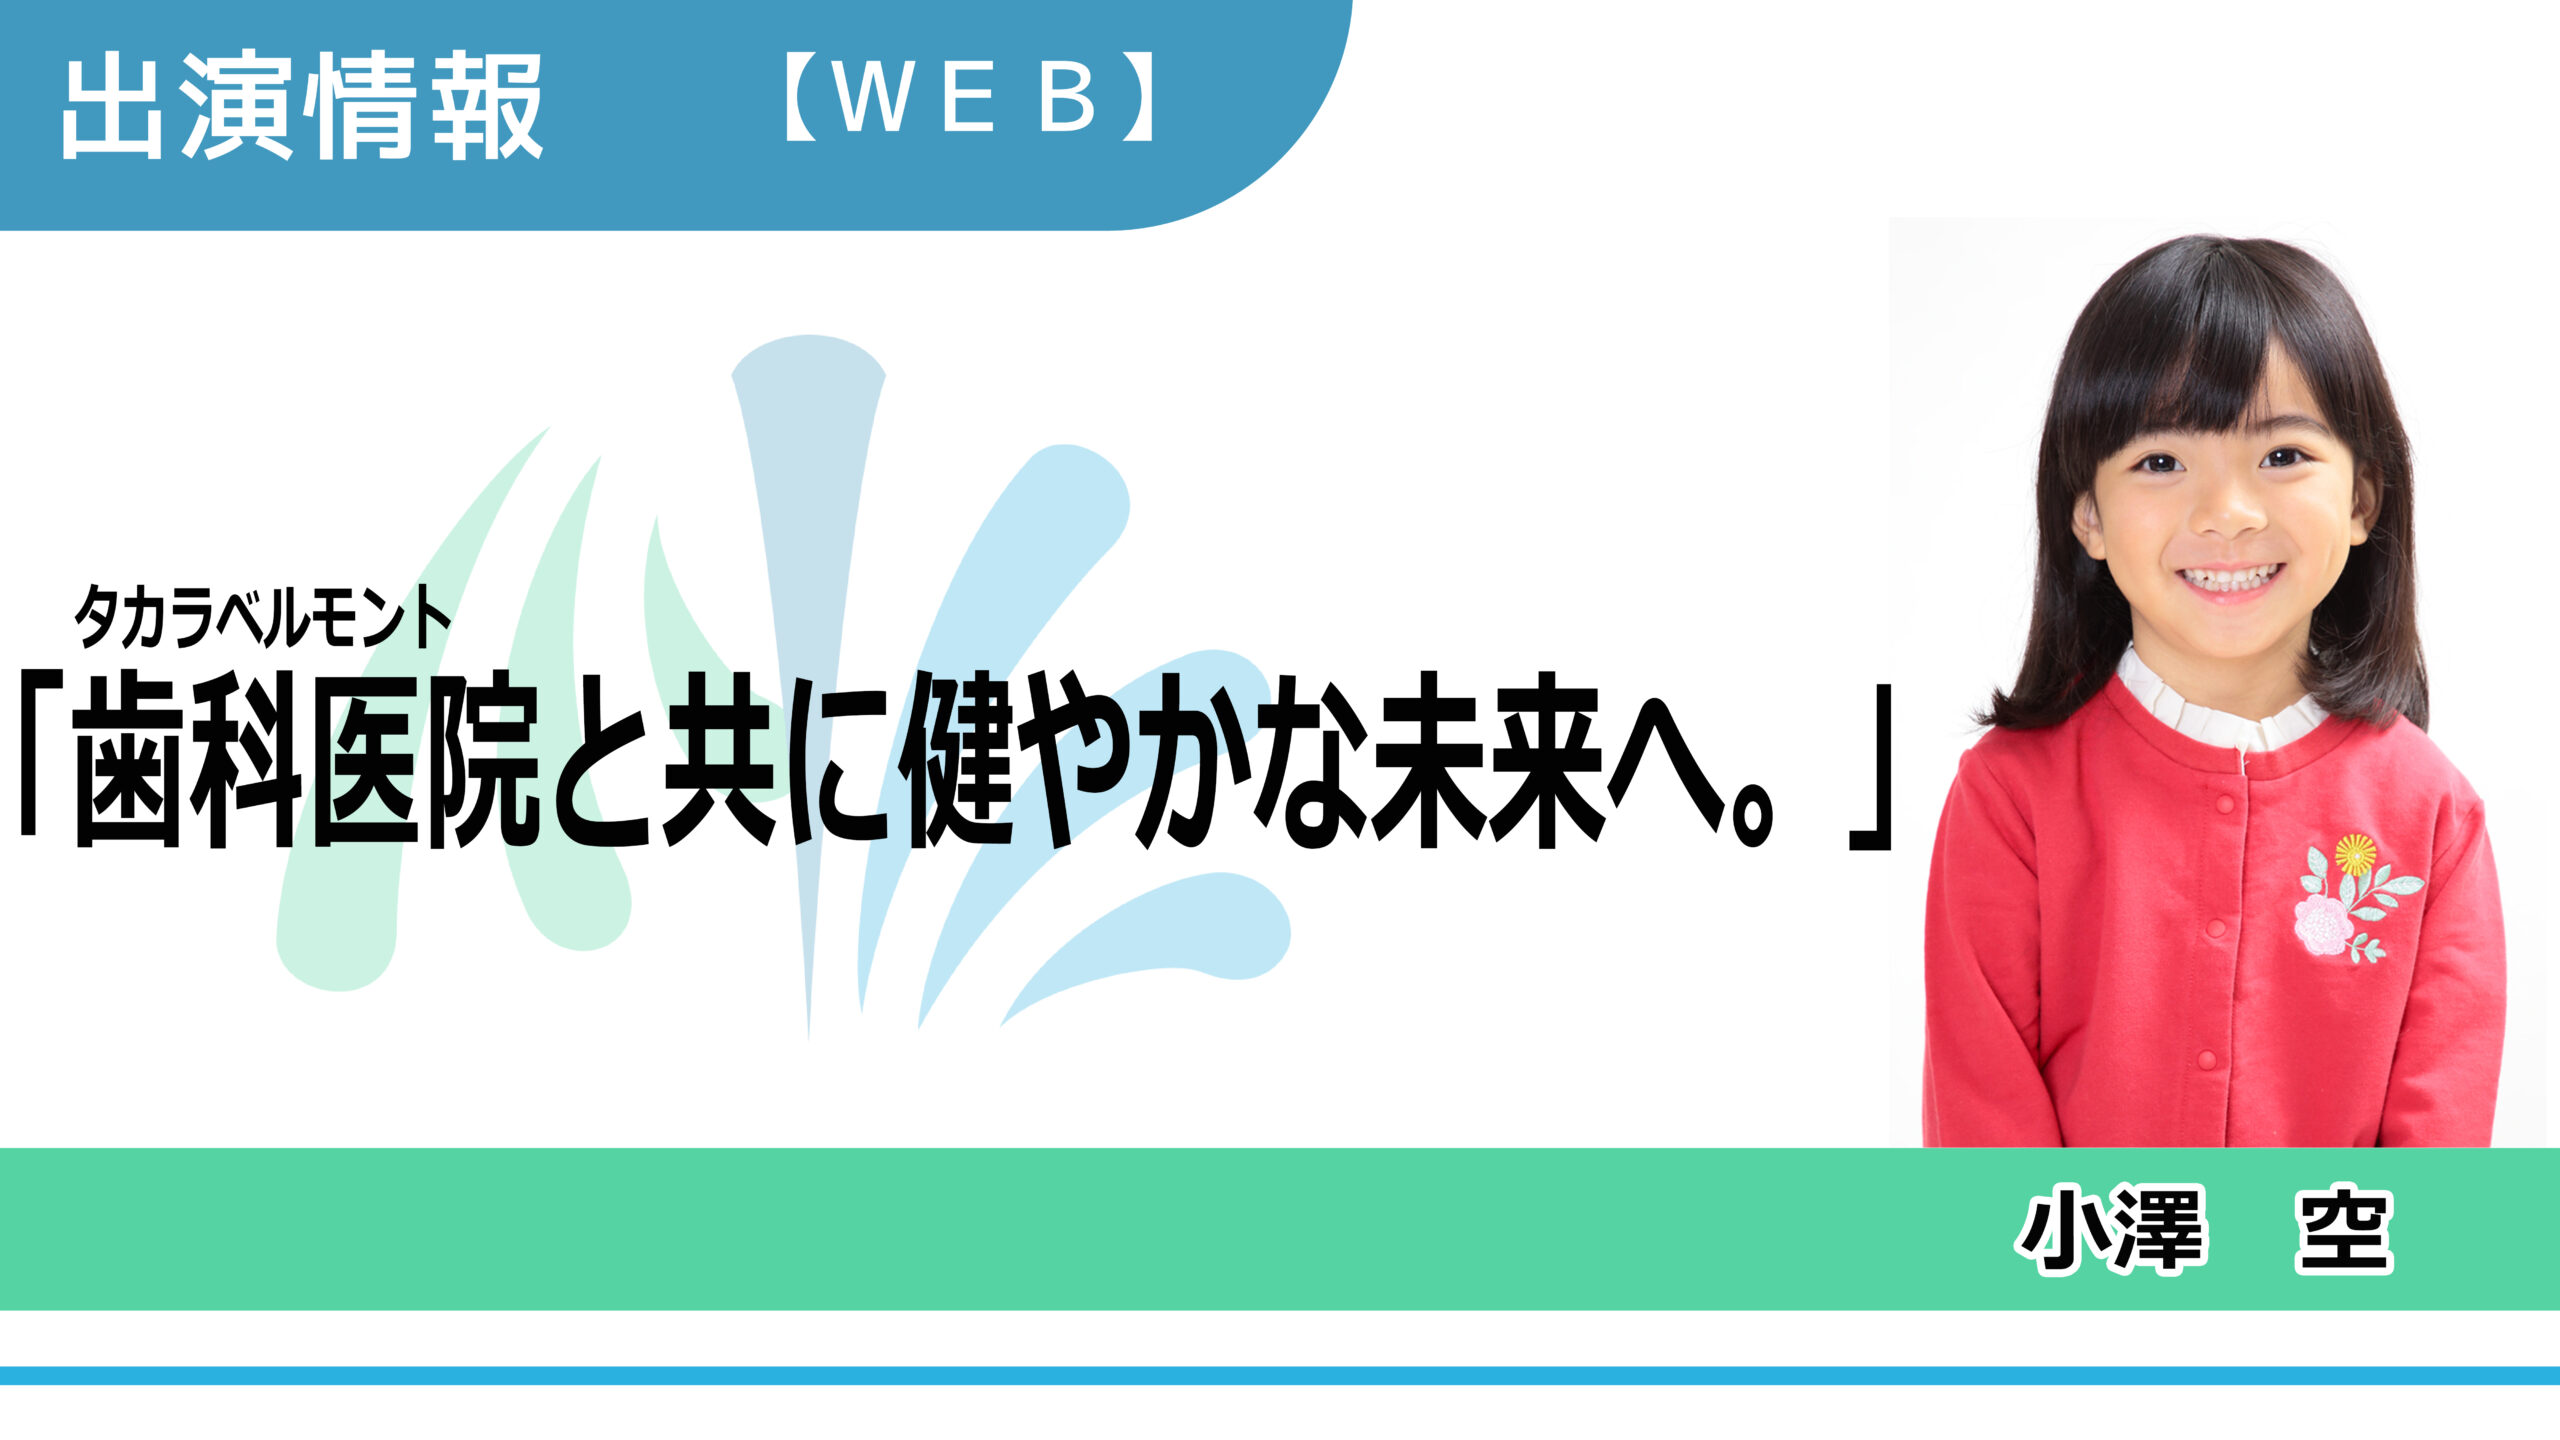 【出演情報】小澤空 / タカラベルモント「歯科医院と共に健やかな未来へ。」WEBムービー　出演